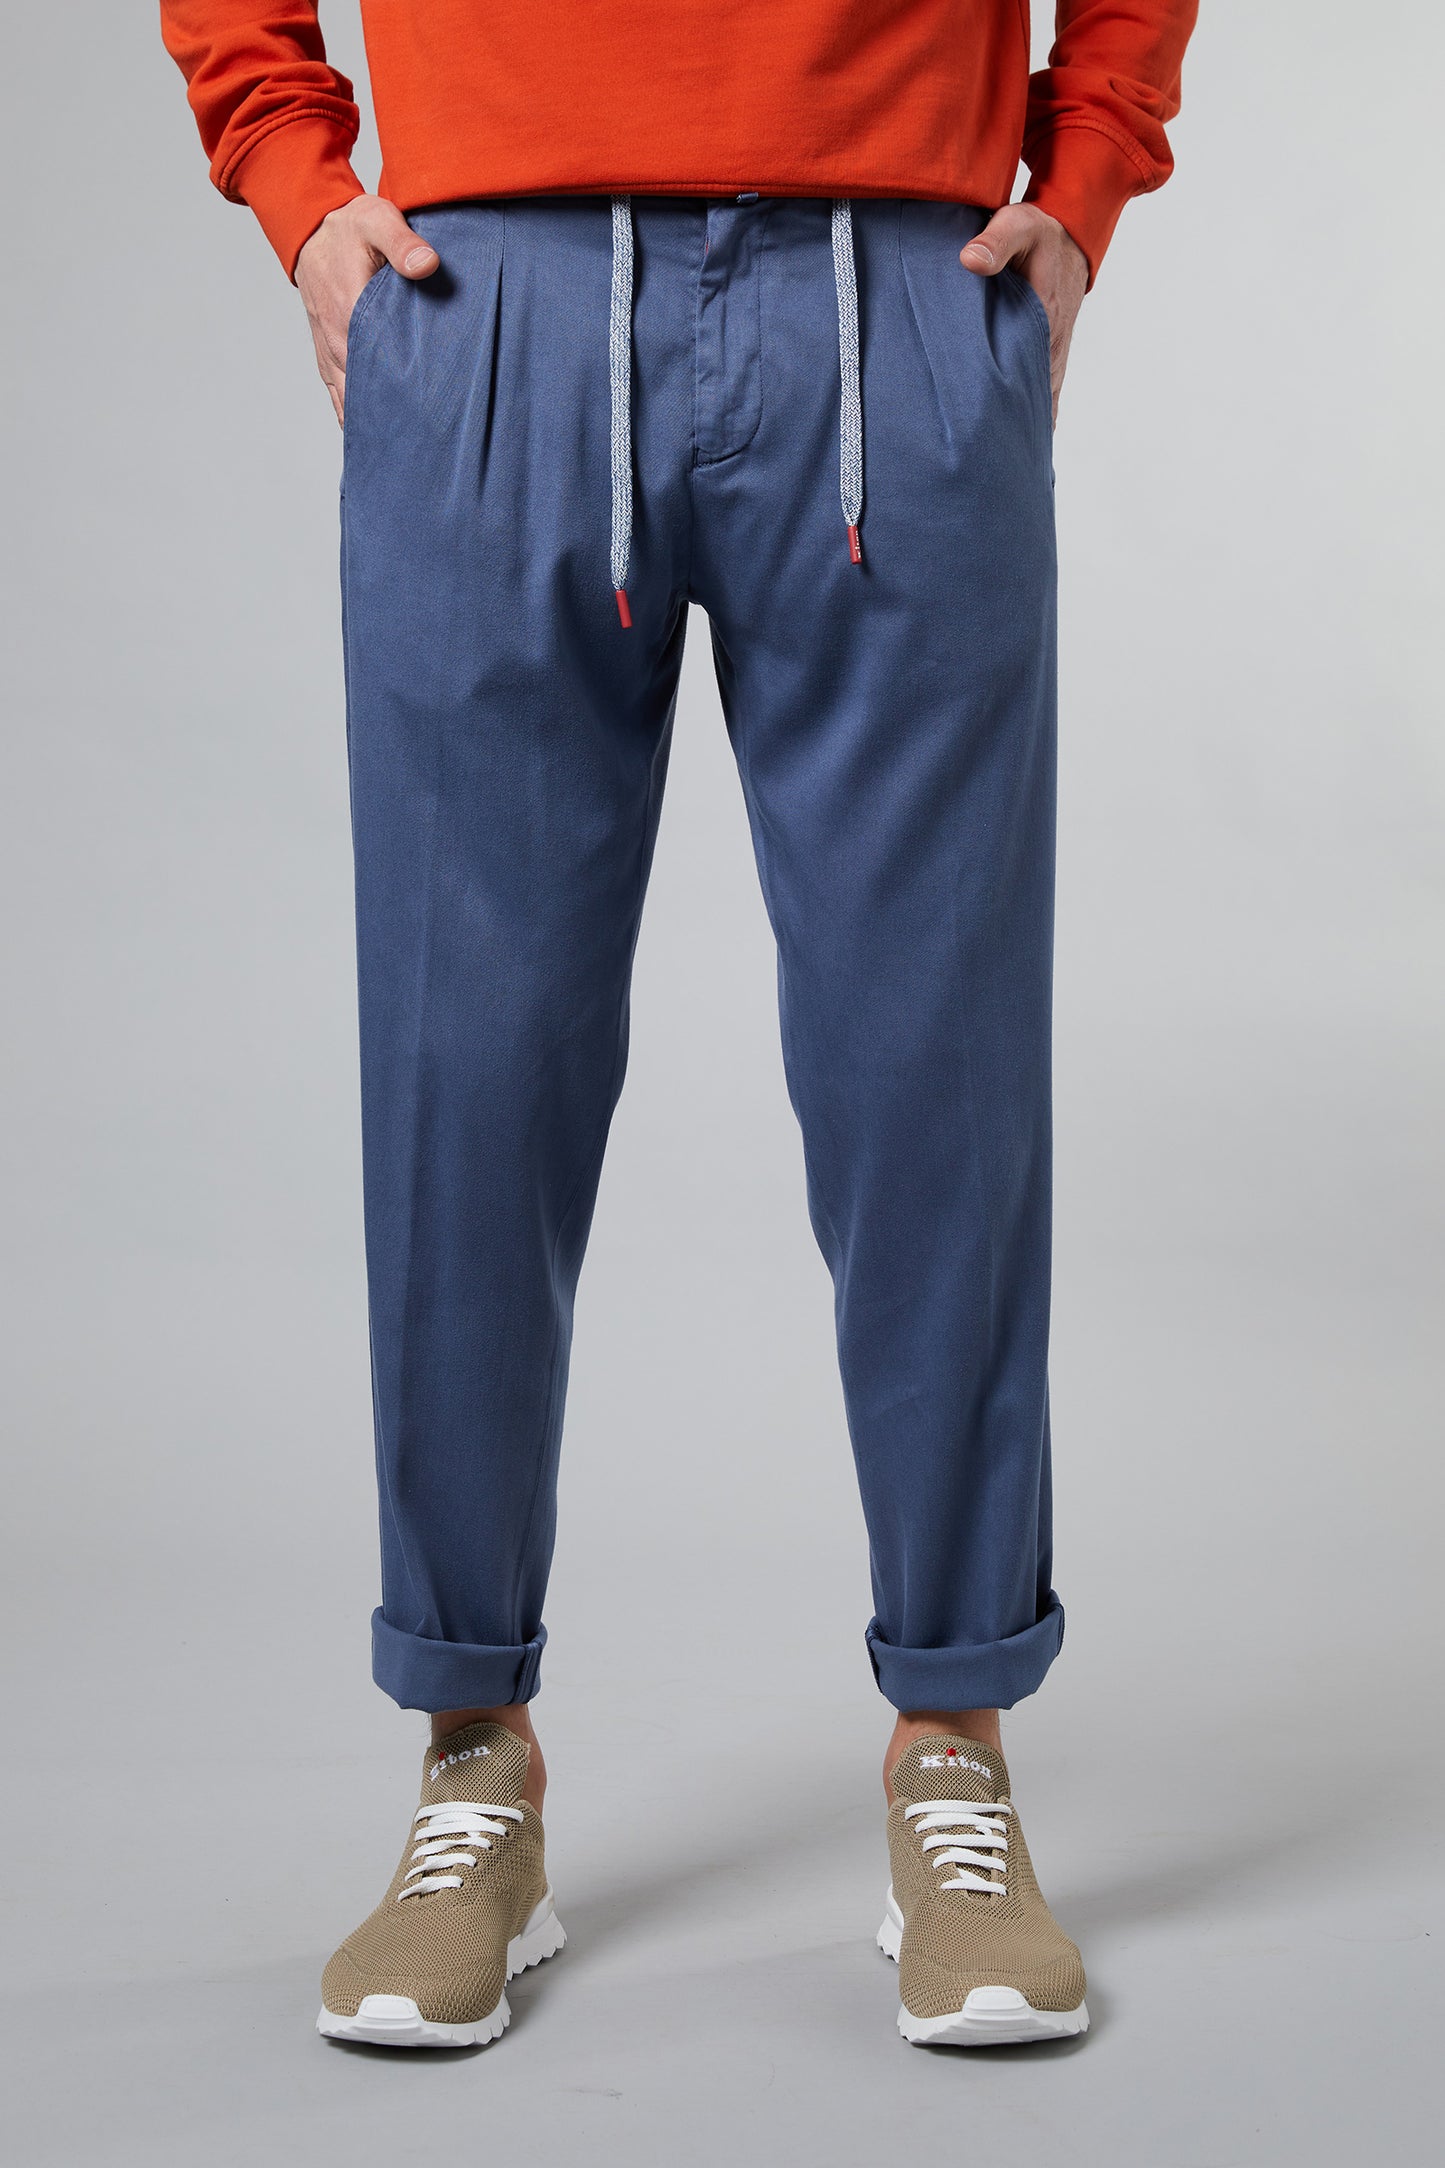  Kiton Pantalone Modello Laccio 1 Pence Con Zip Blu Blu Uomo - 1